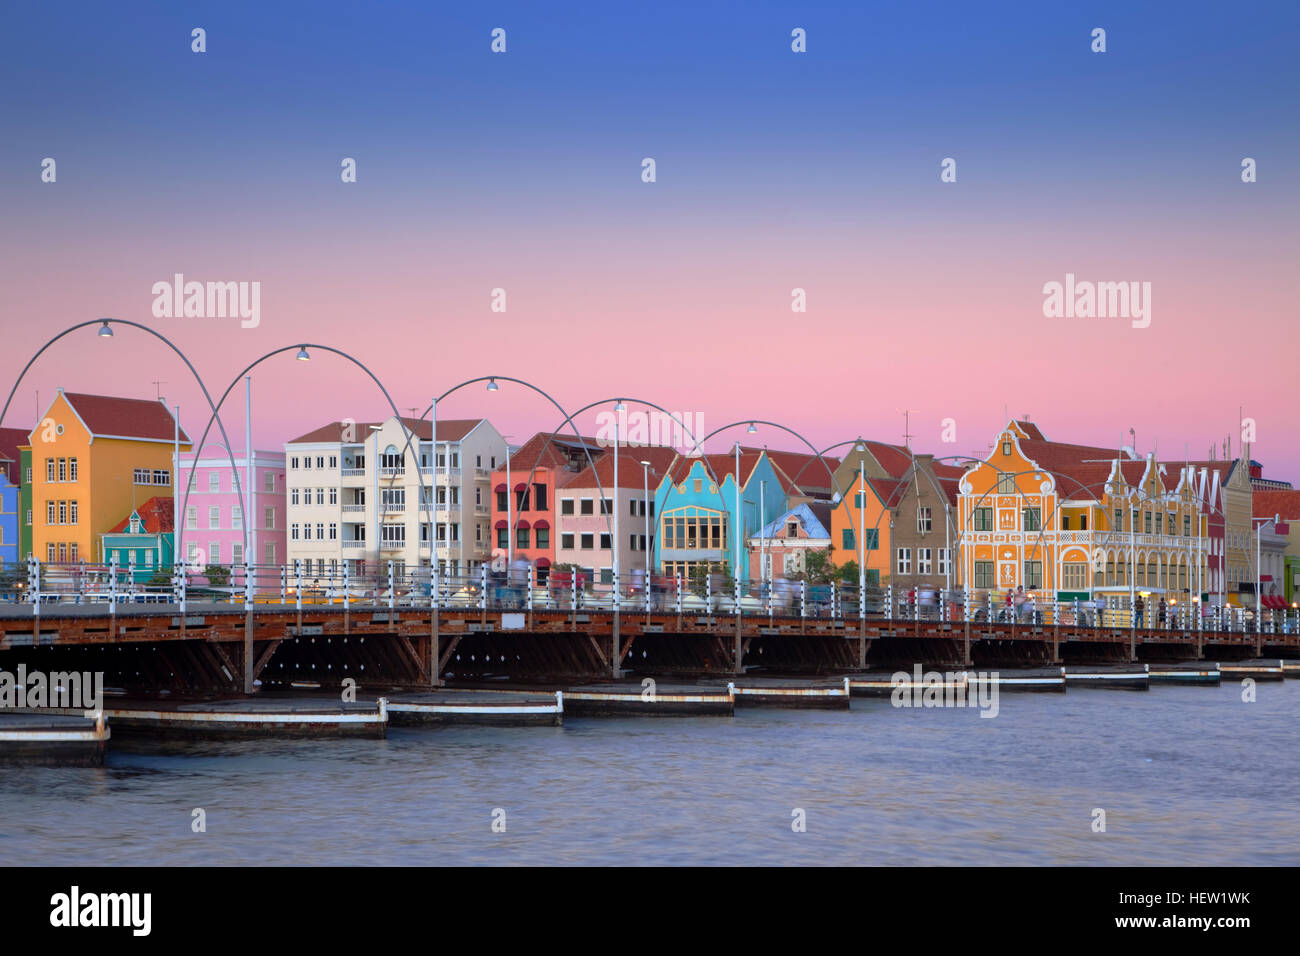 Les maisons colorées et la reine Emma ponton de Willemstad, Curaçao dans les Antilles néerlandaises au crépuscule. Banque D'Images